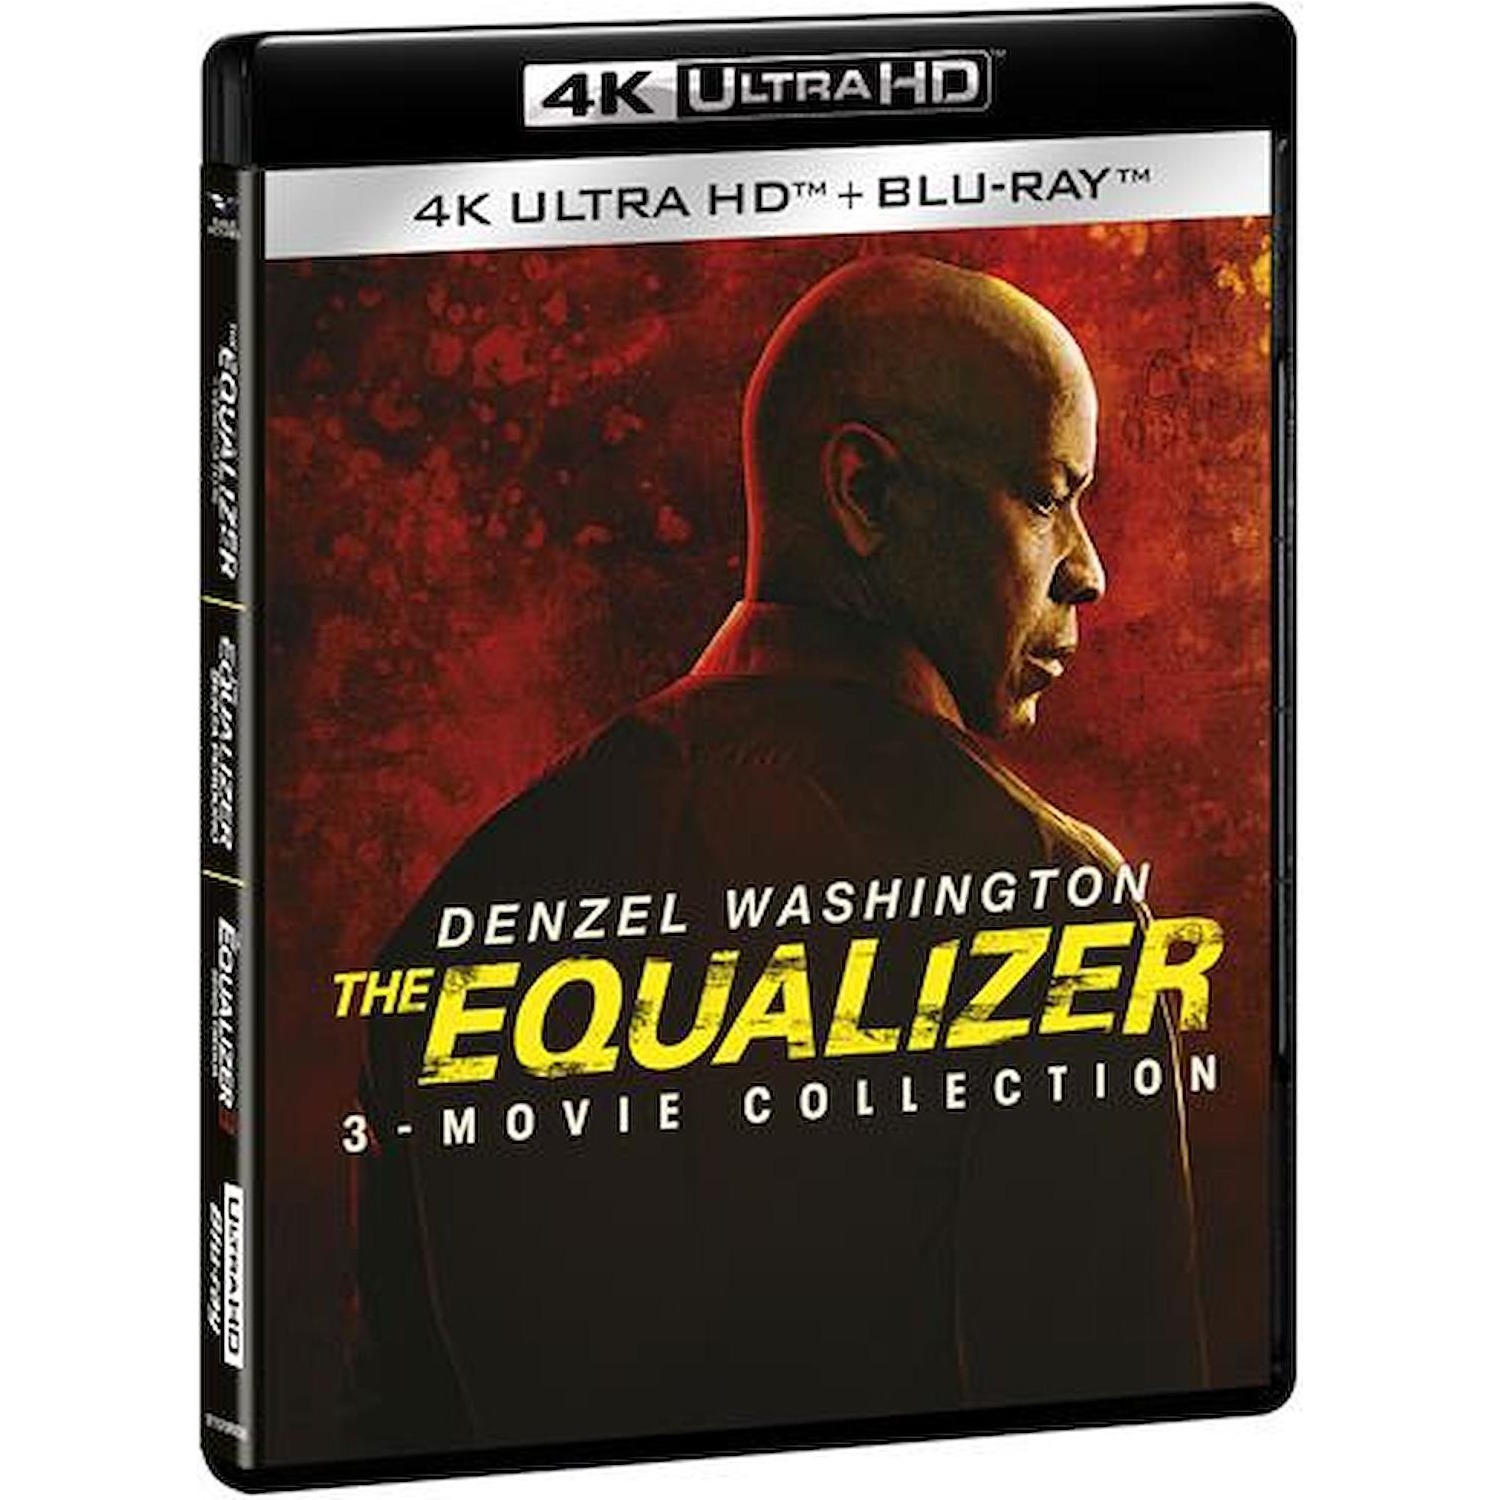 Immagine per Cofanetto Bluray 4k The Equalizer 1-3 Movie Collection da DIMOStore